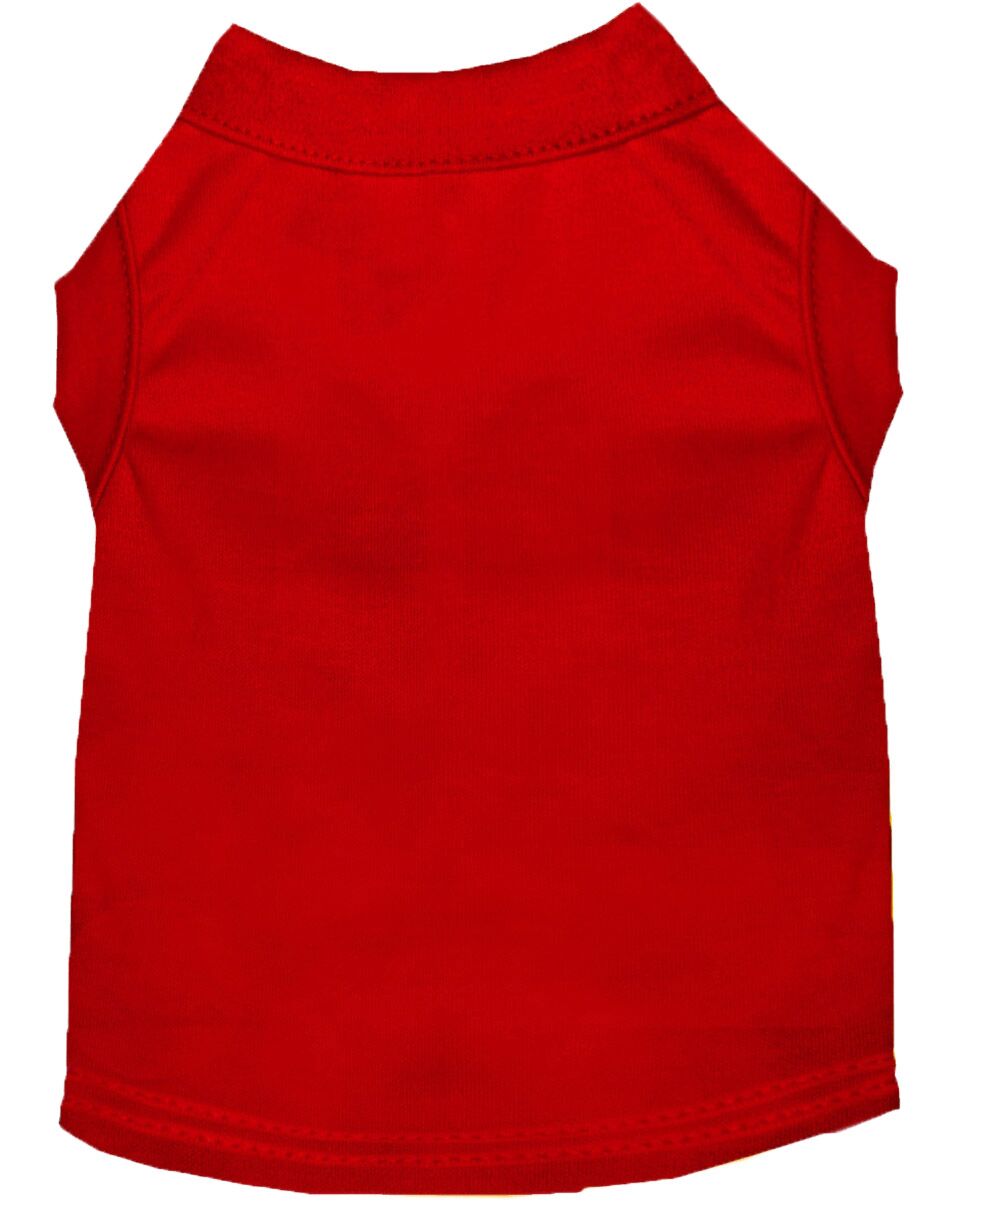 Plain Red Dog Shirt